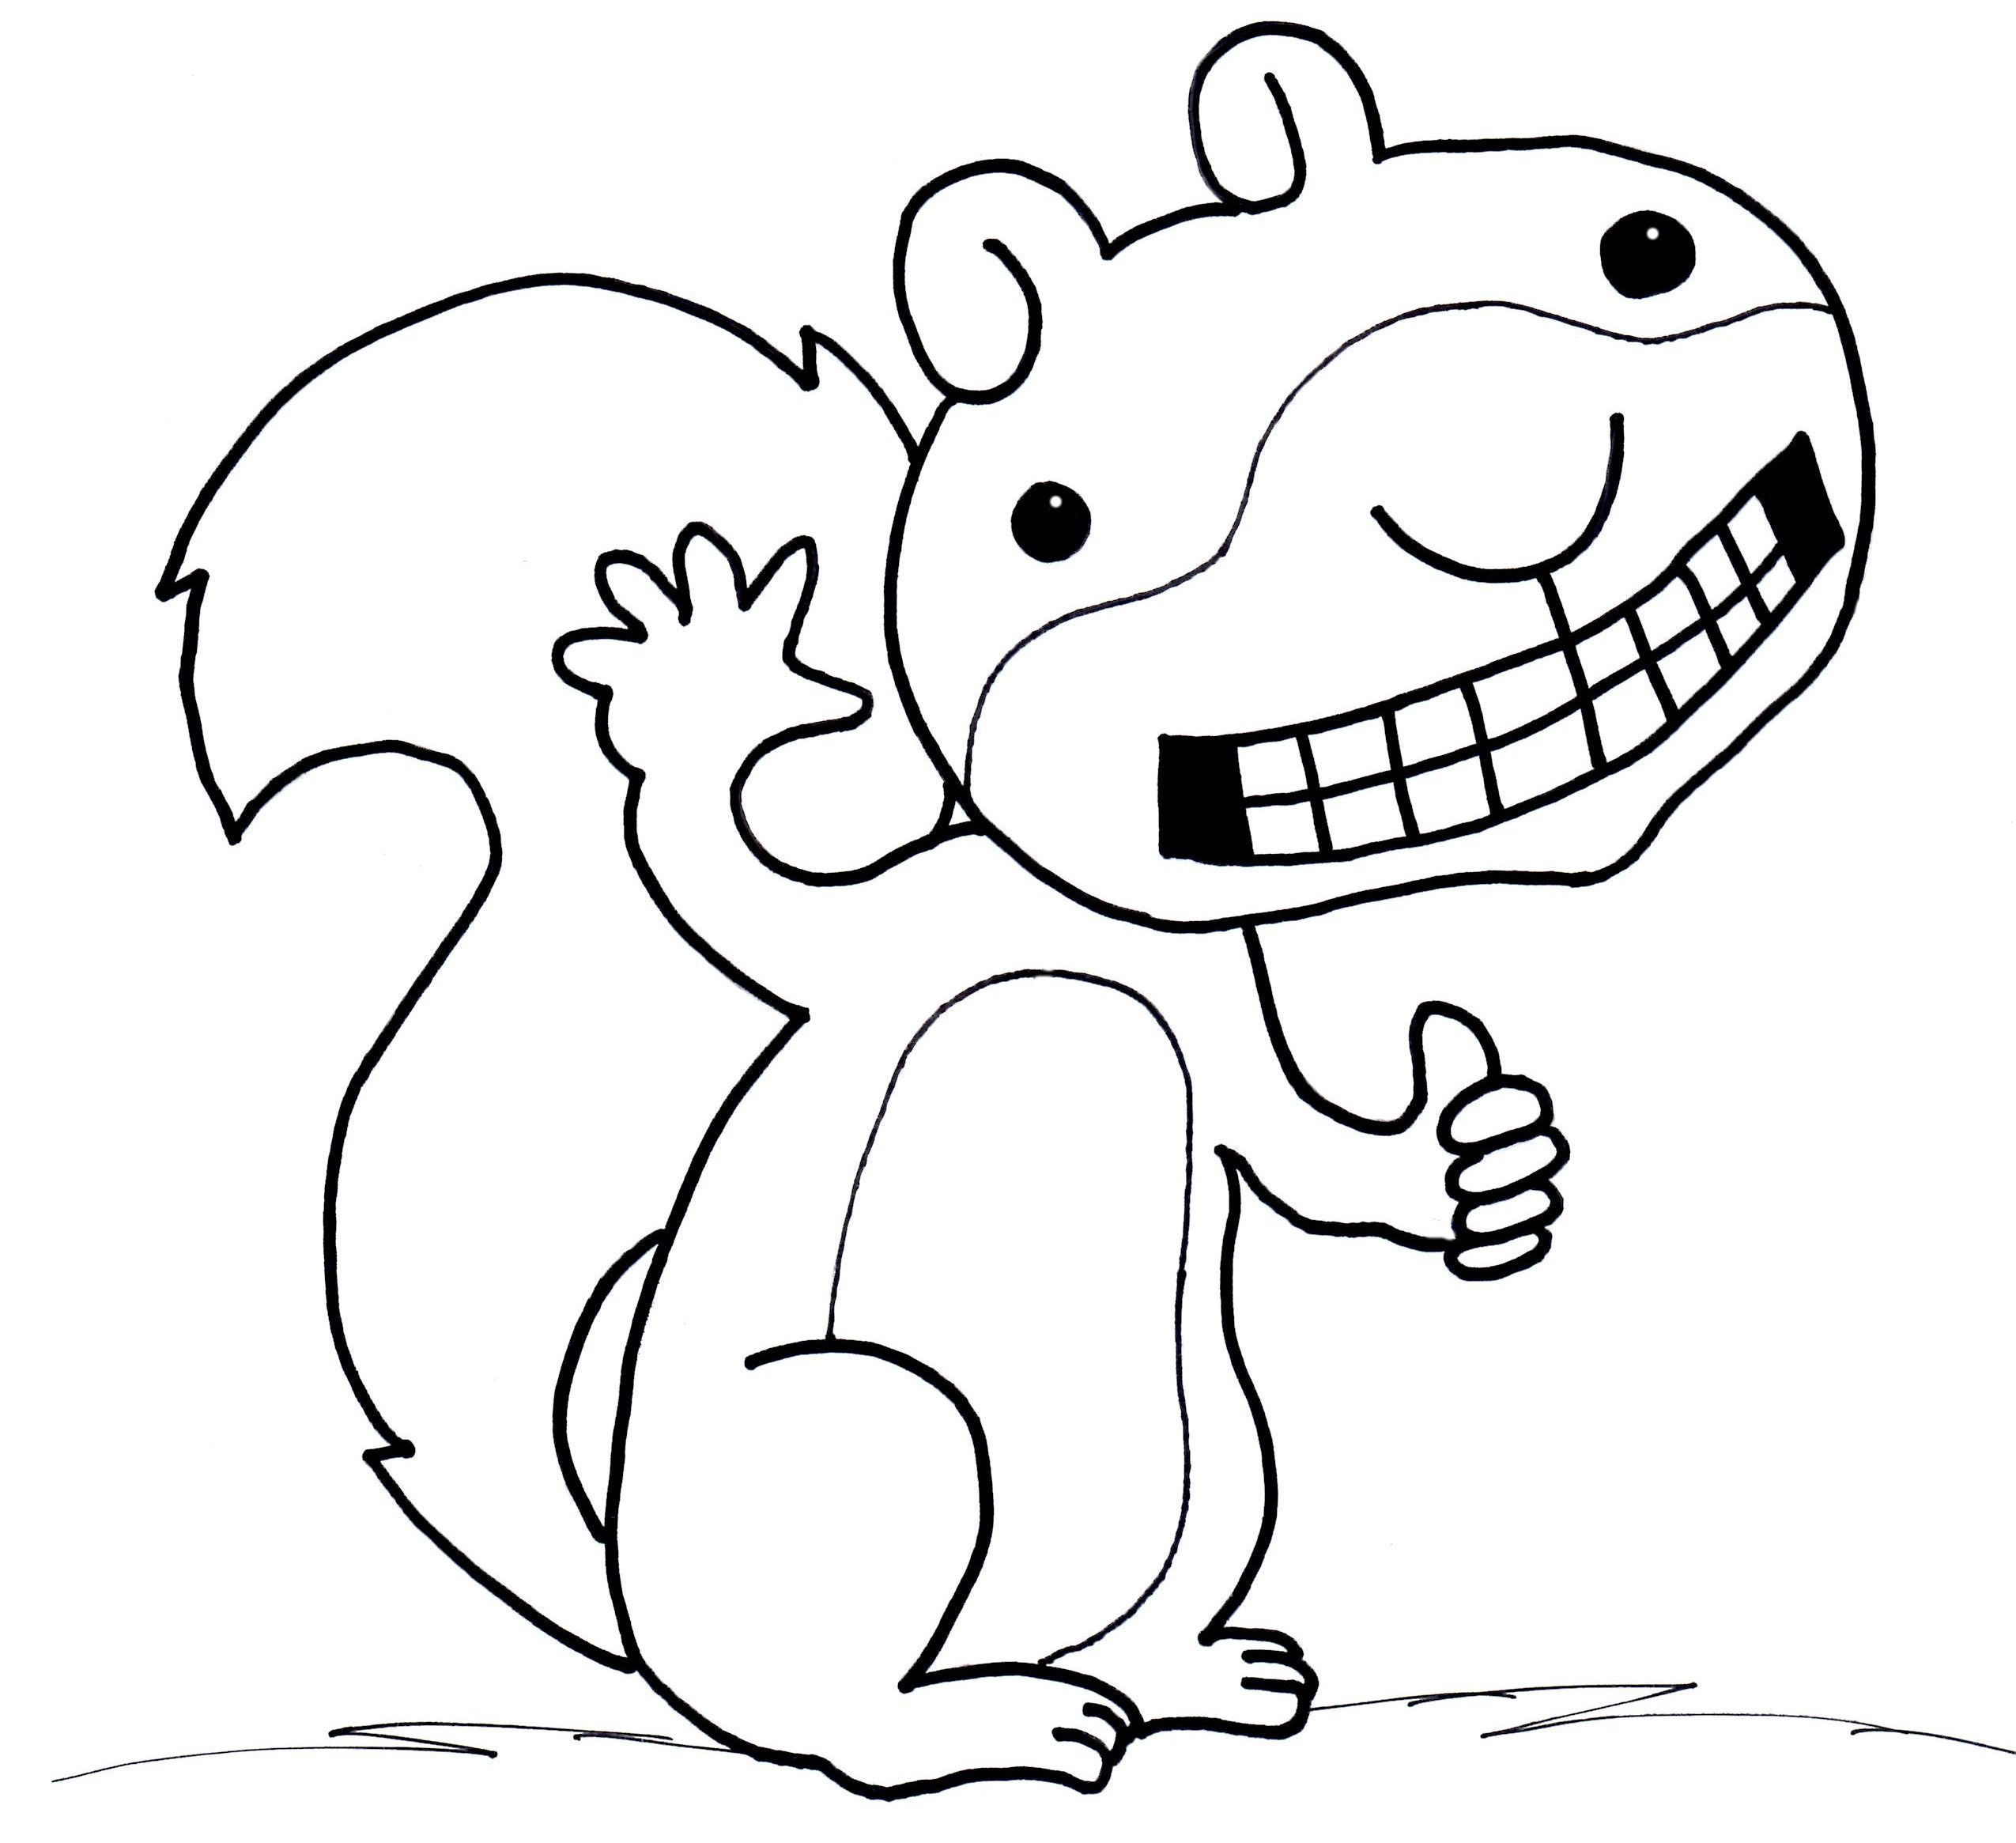 Scaredy Squirrel coloring page | Sincap, Hayvan boyama sayfaları, Çizim  fikirleri